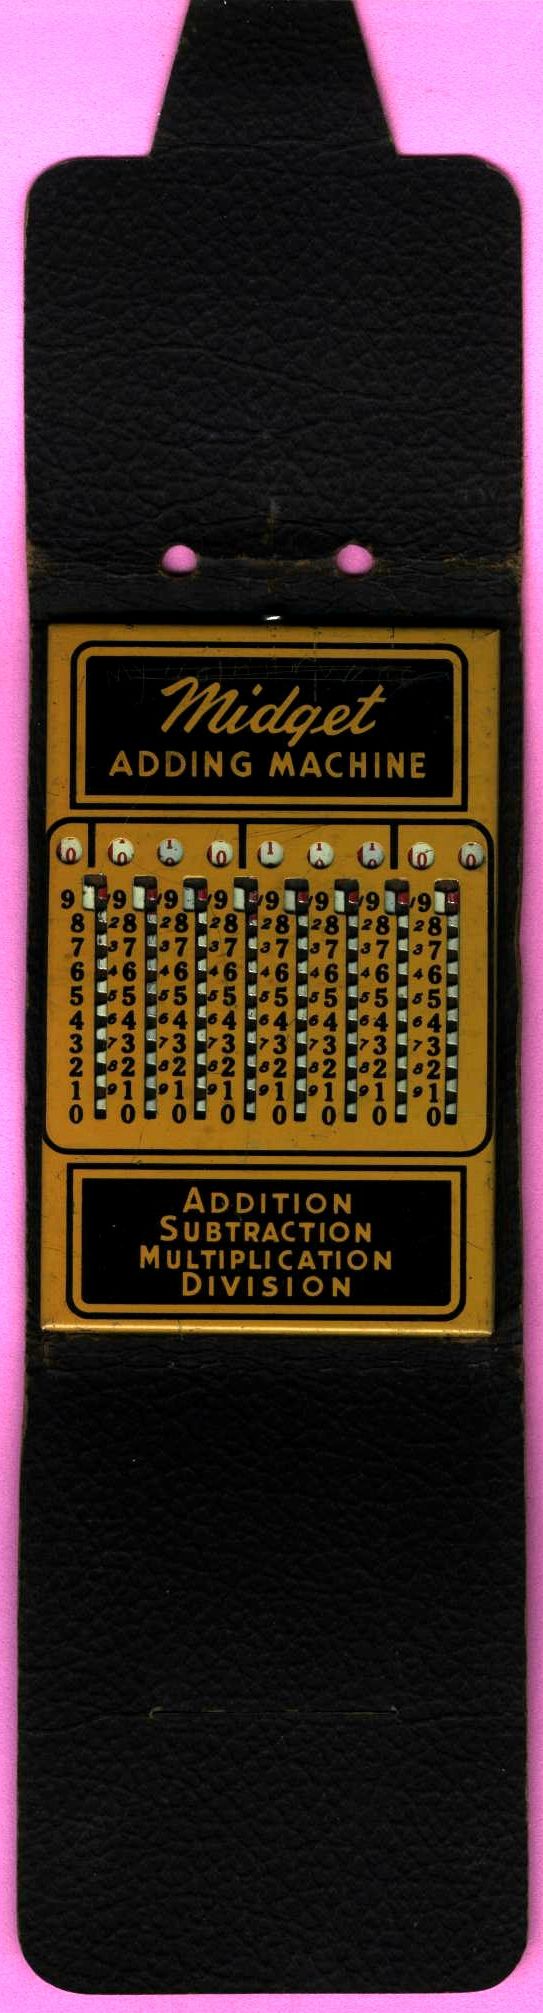 Midget adding machine